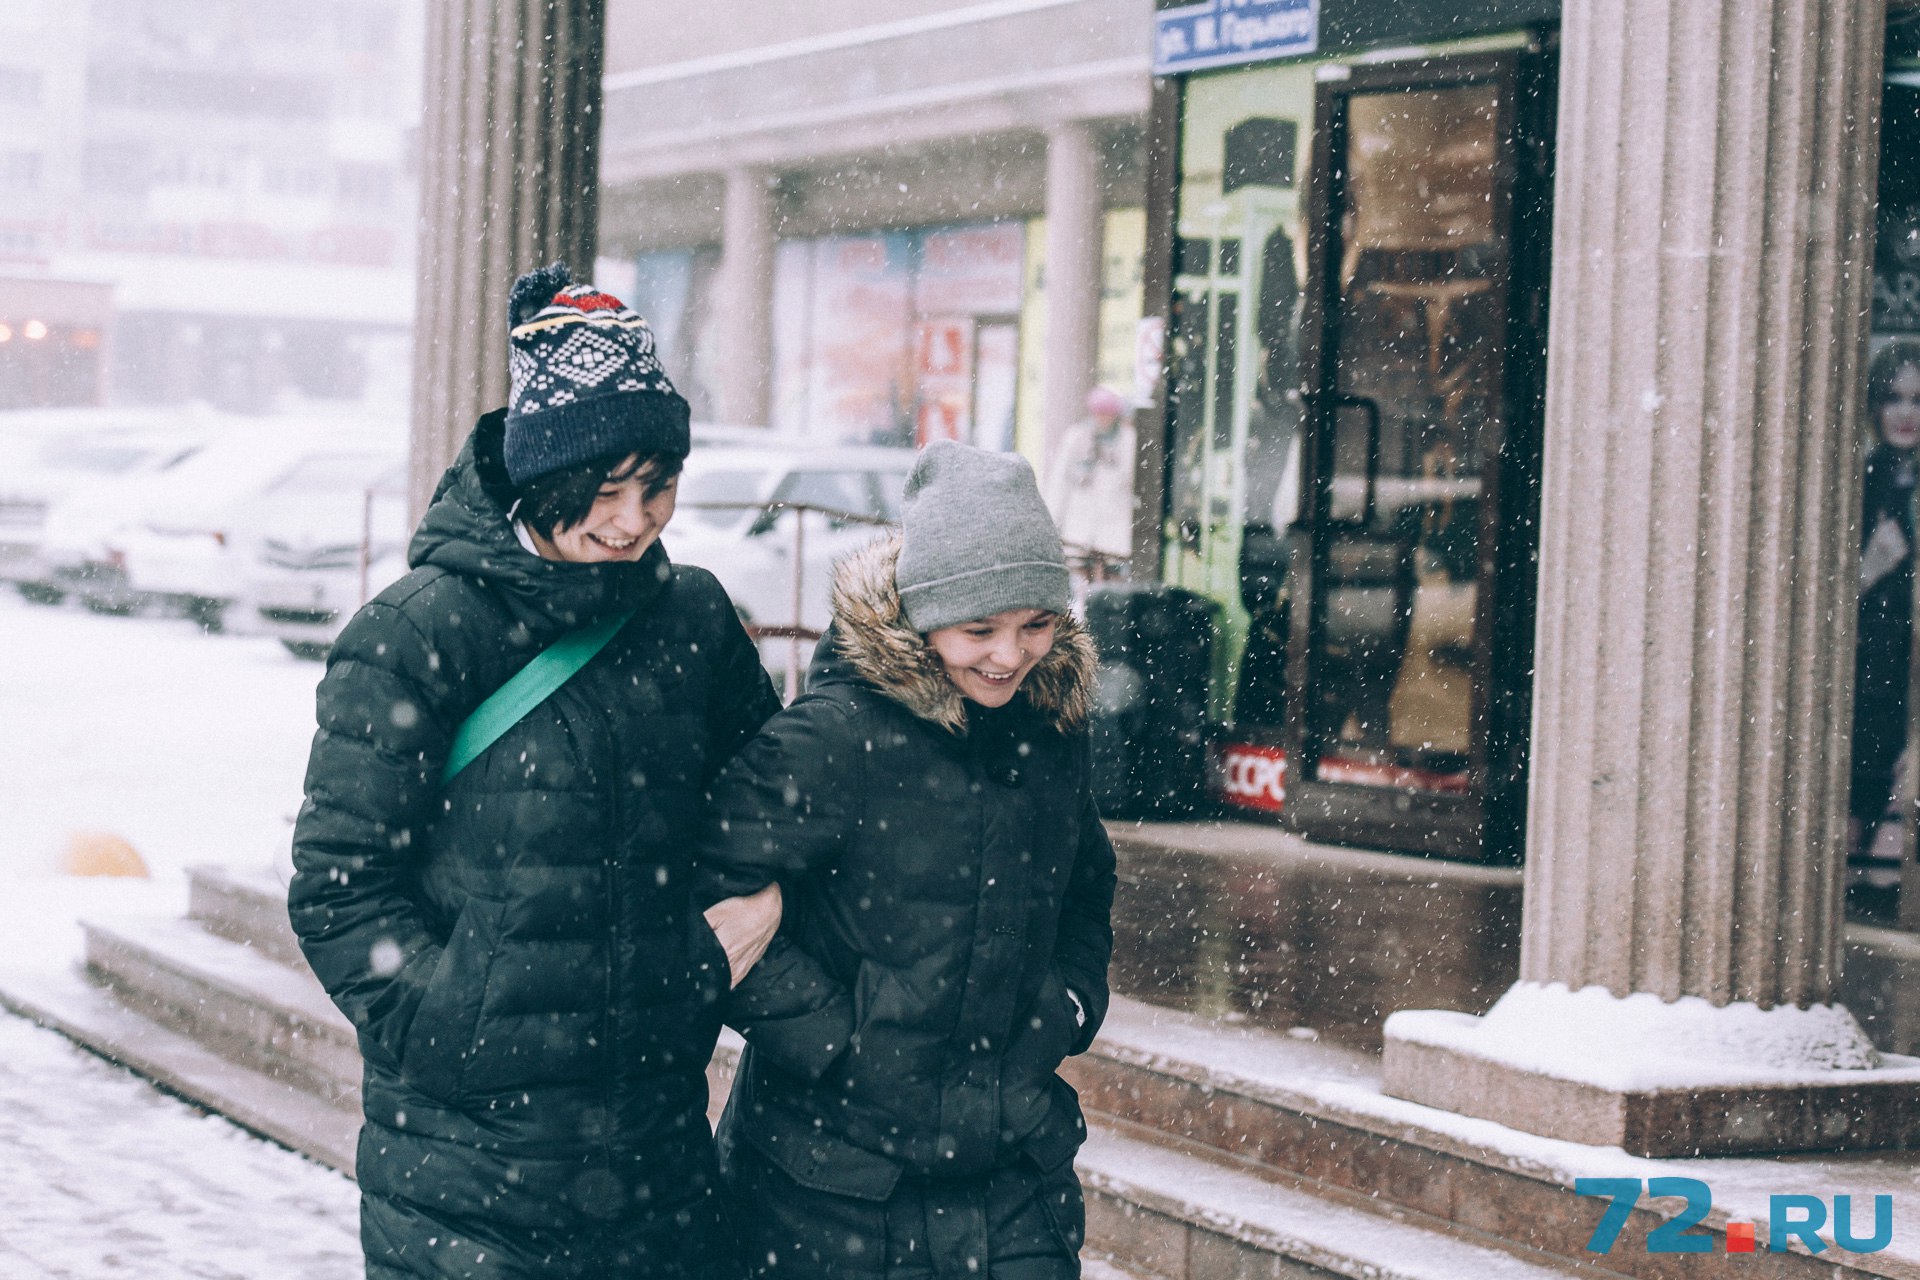 Несмотря на обильный снег, на улицах можно было встретить радостных горожан